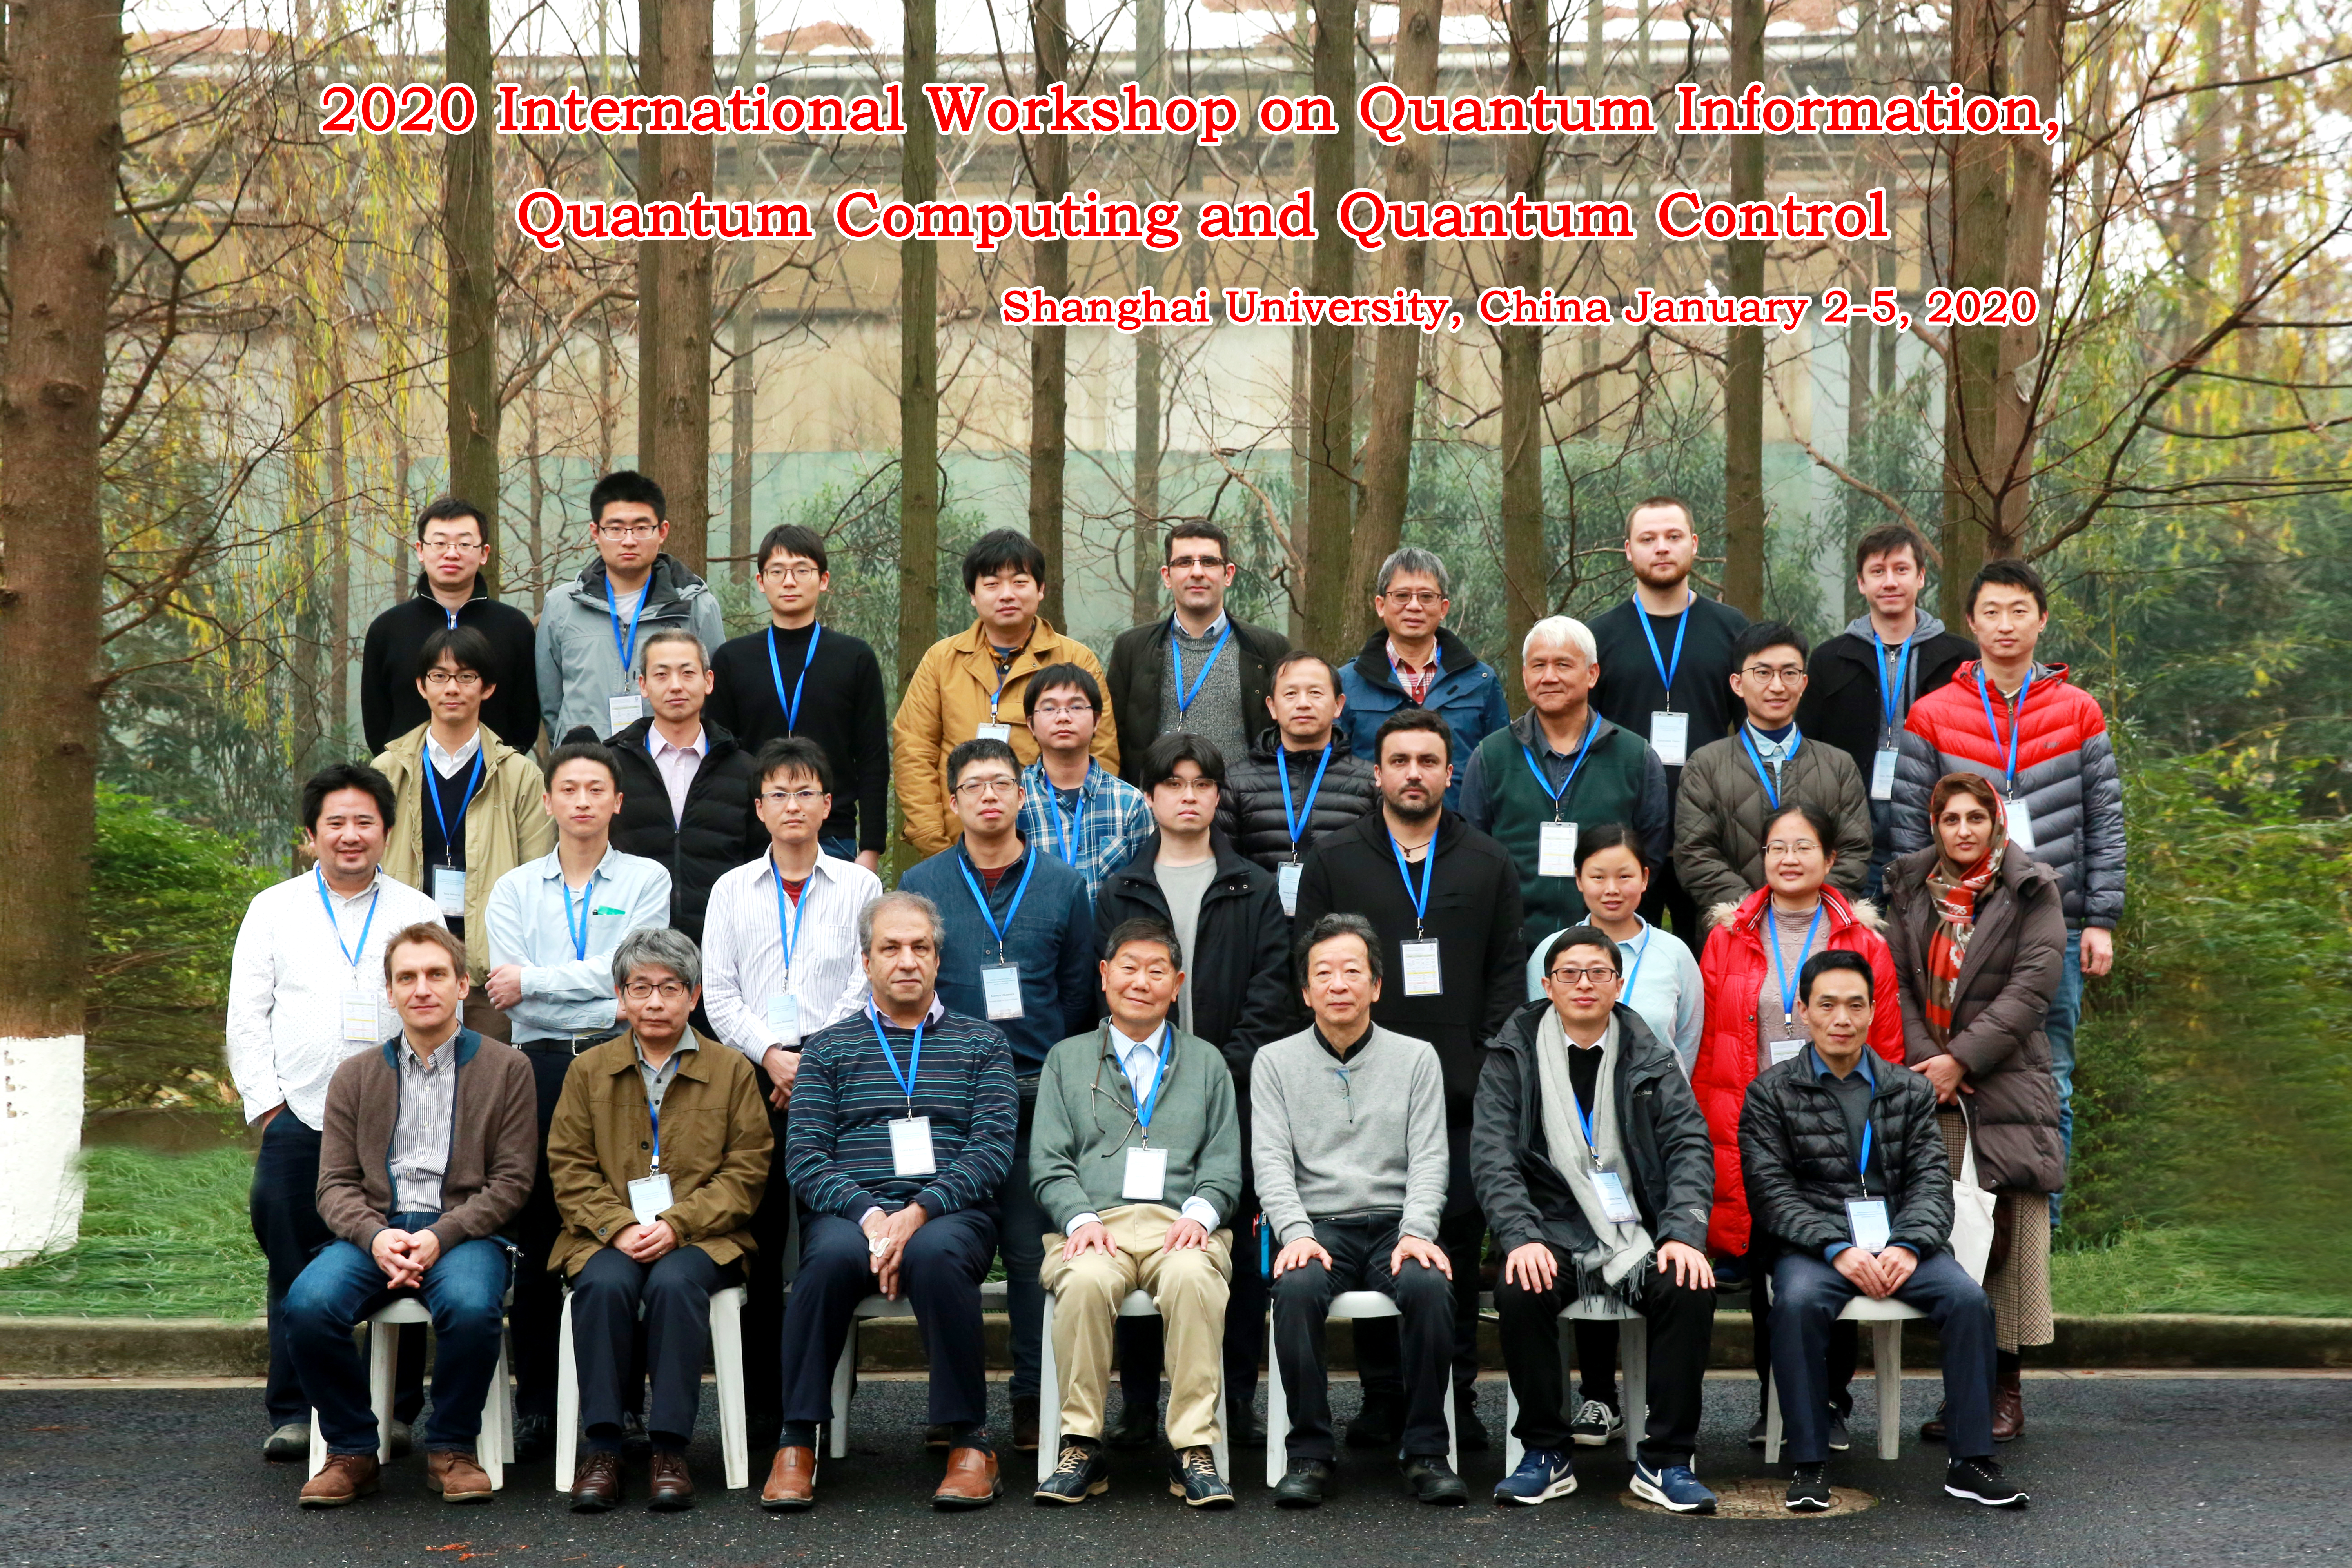 International Workshop on Quantum Information, Quantum Computing and Quantum Control